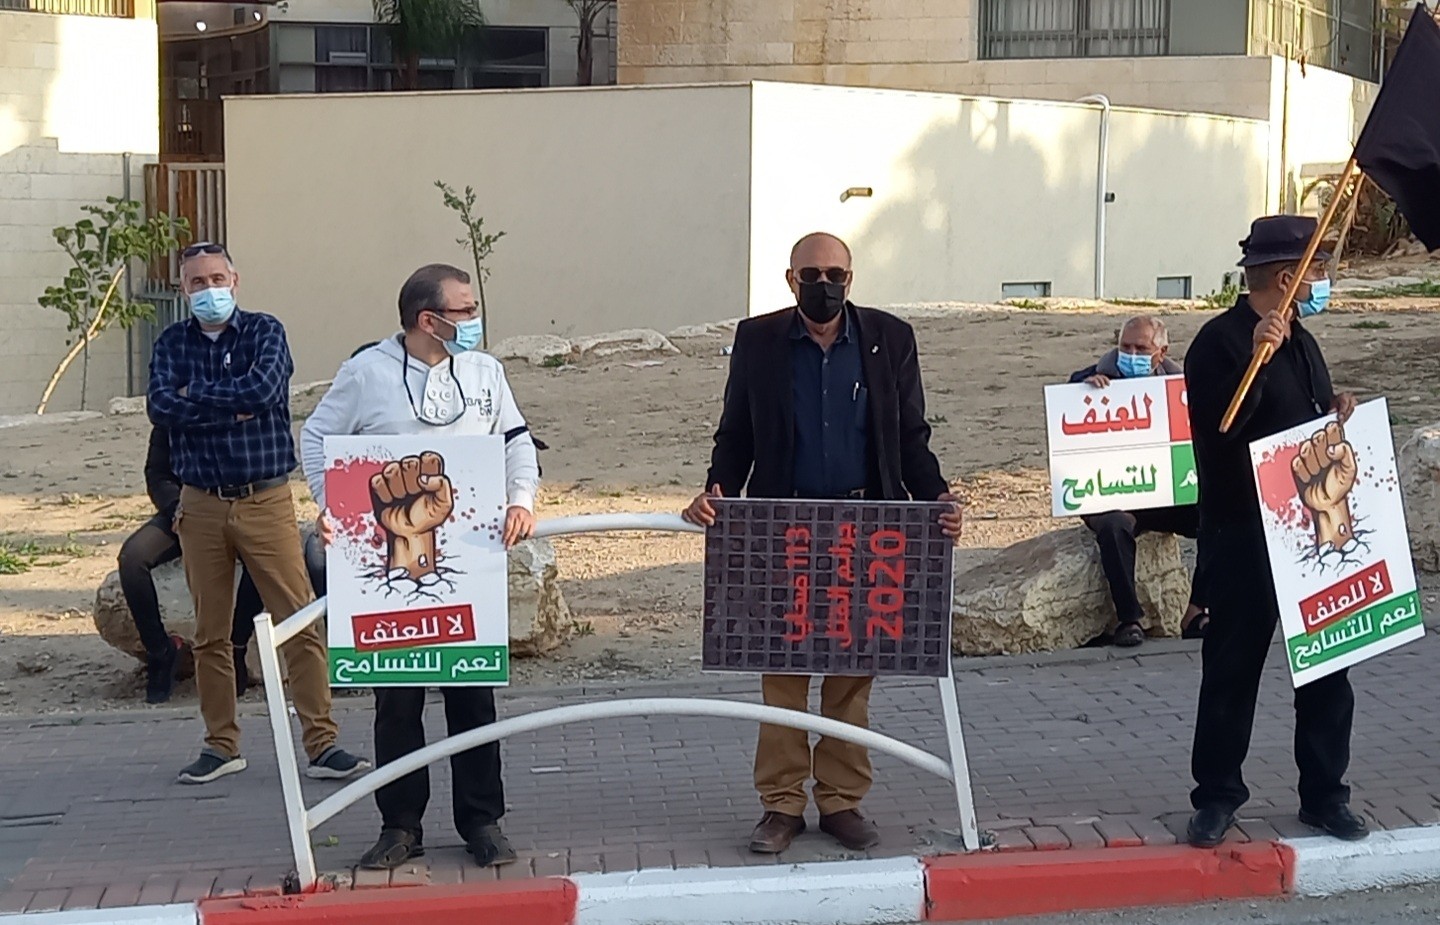 وقفة احتجاجية بمشاركة عرب ويهود في مدينة رهط | موقع سوا 